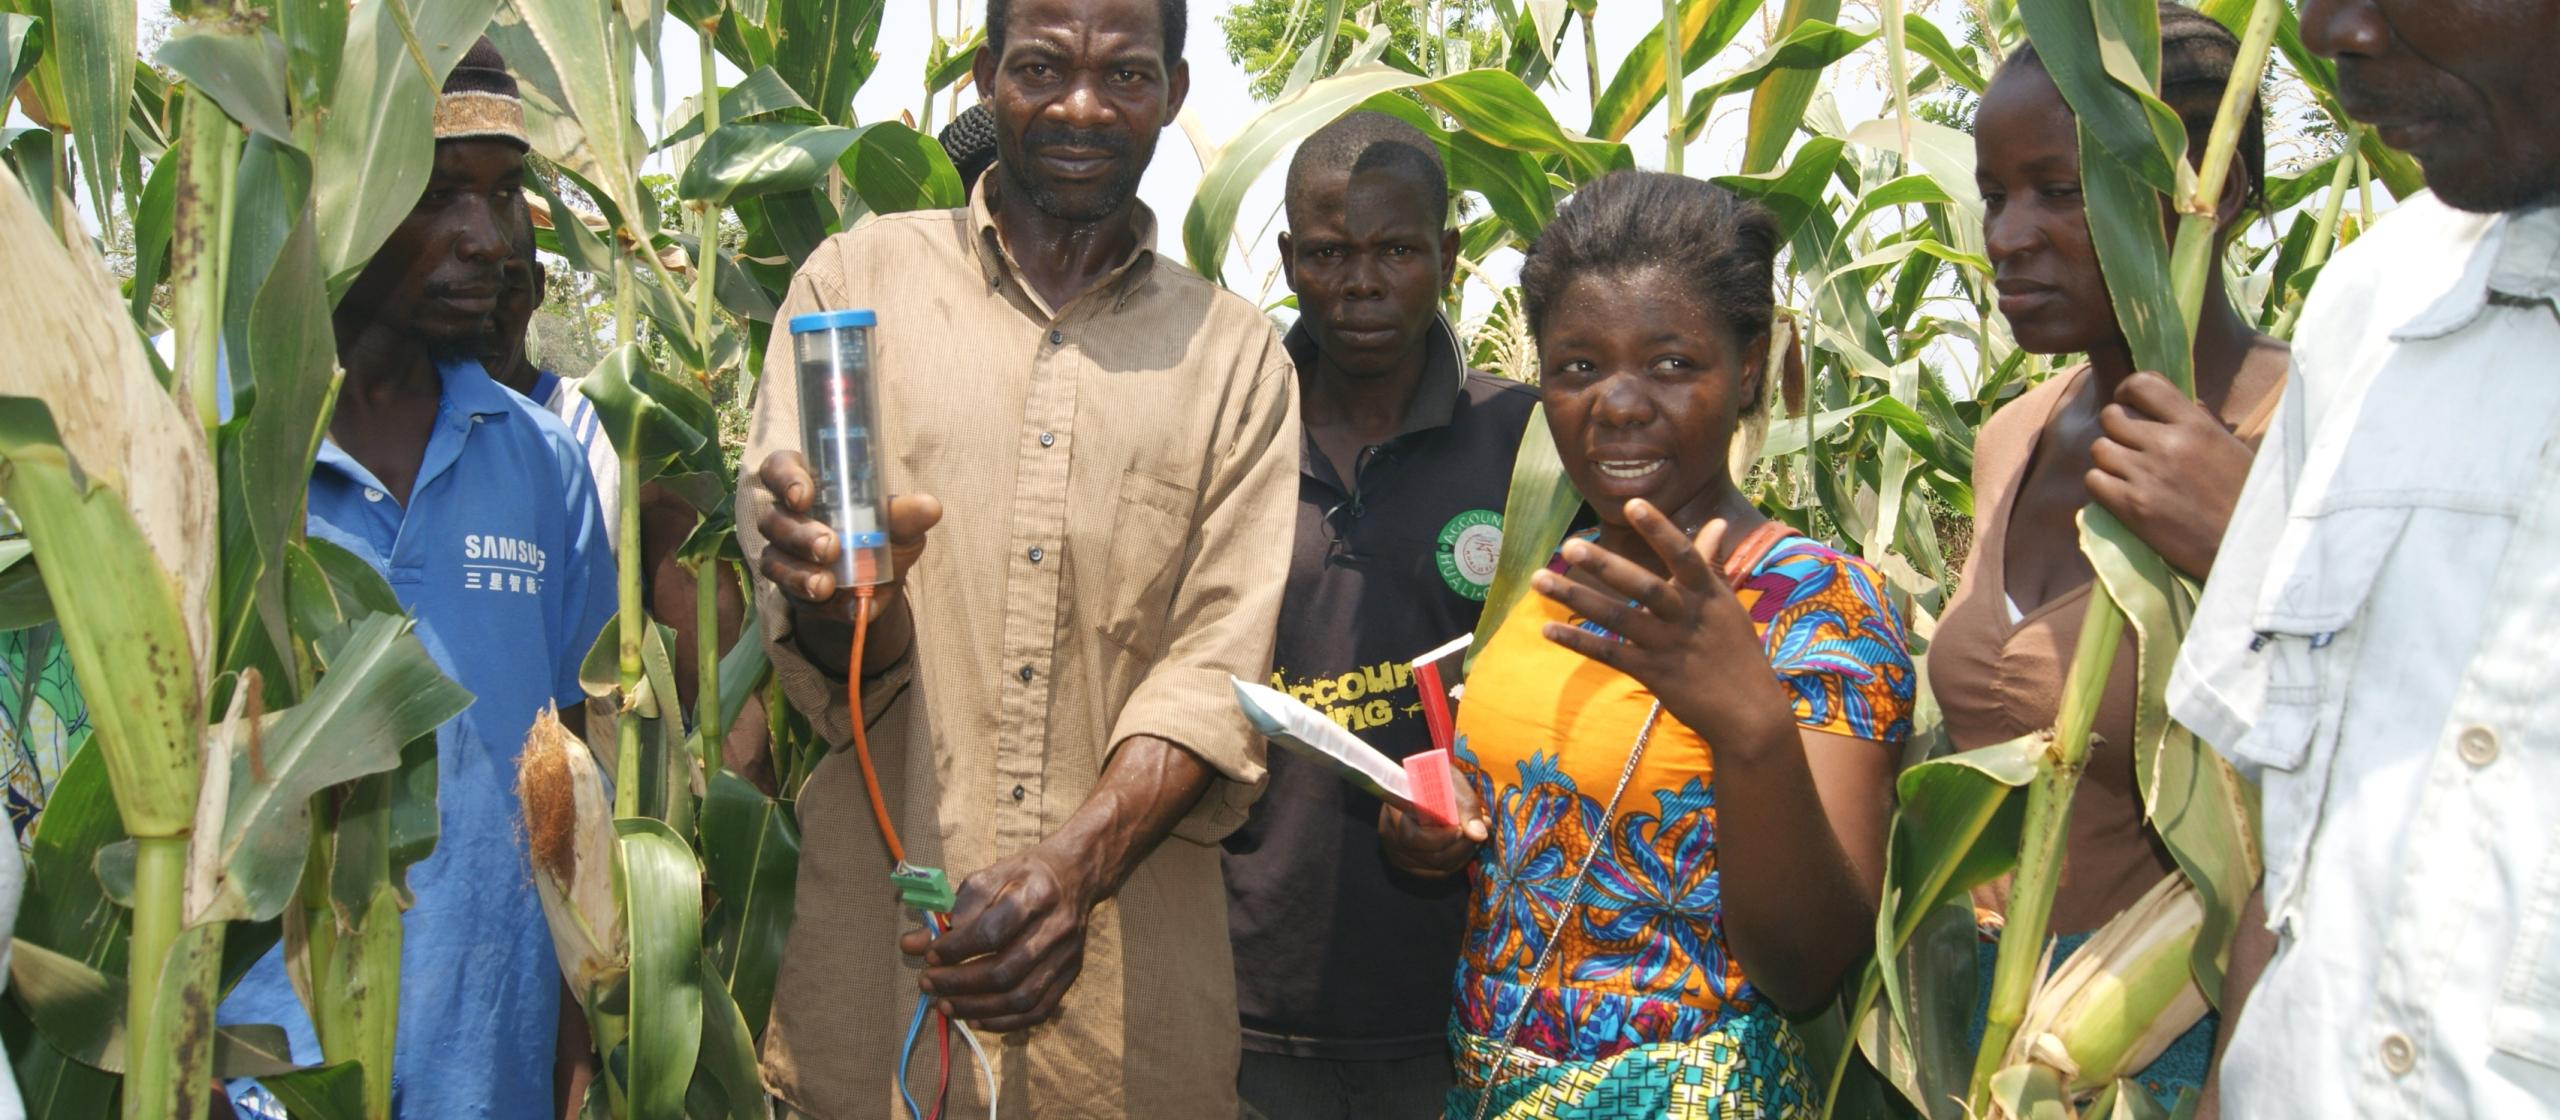 Farmers in corn field measuring water